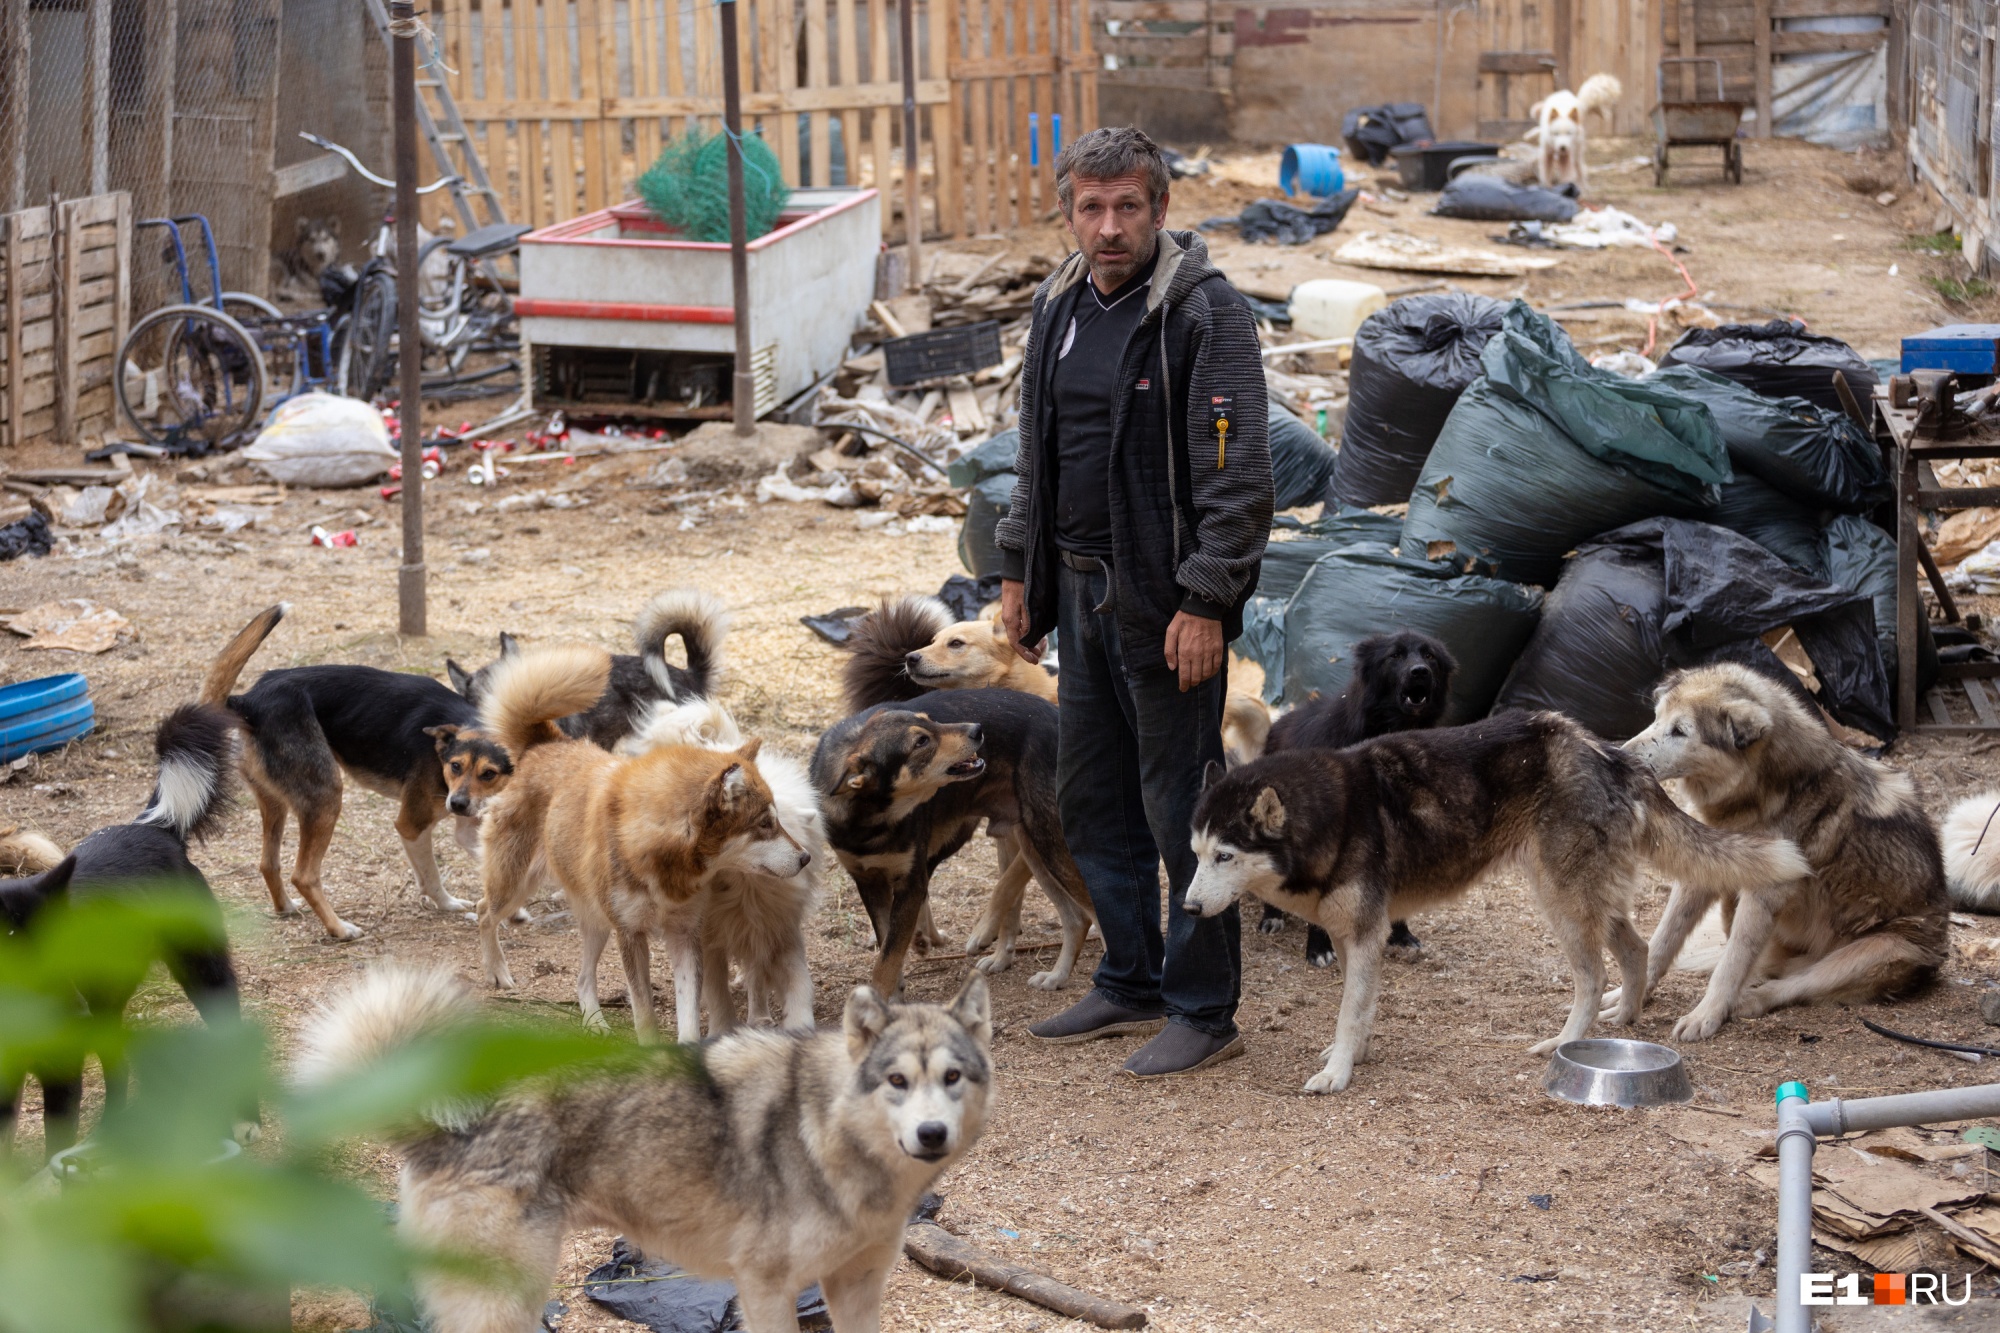 «Вонь невыносимая»: екатеринбуржцы объявили войну соседу, который держит во дворе 80 собак и волков